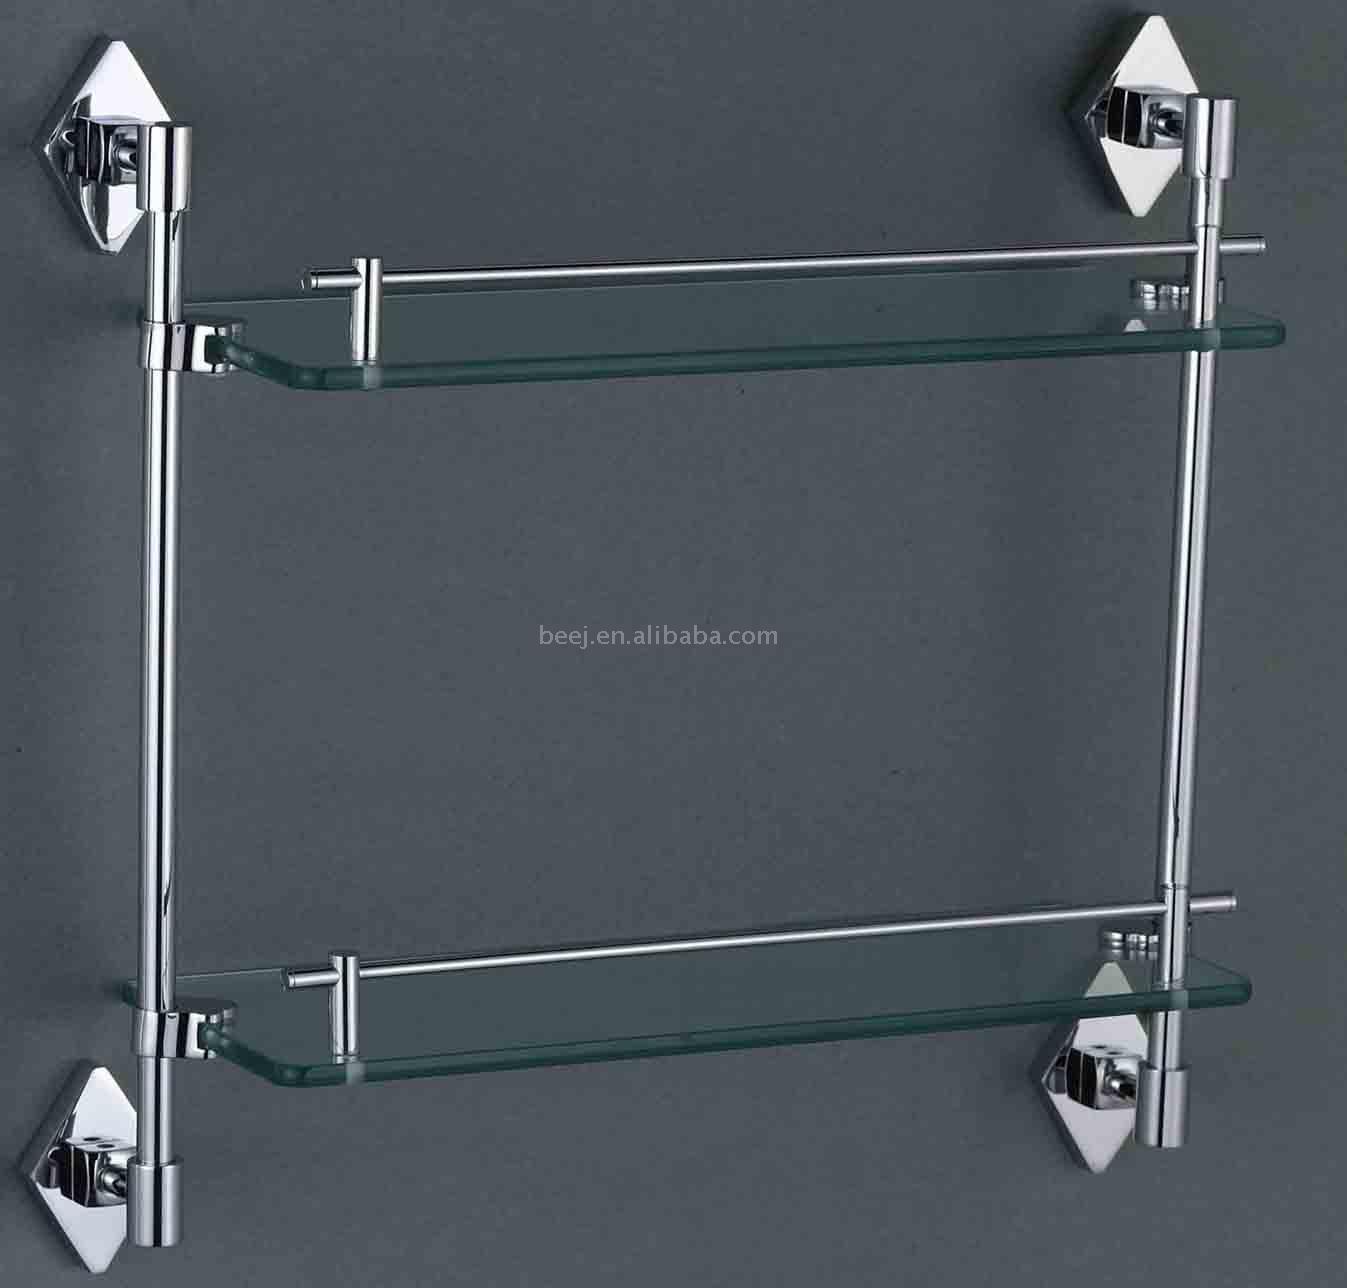  Single Glass Shelf with Towel Bar (Unique de verre Tablette avec Towel Bar)